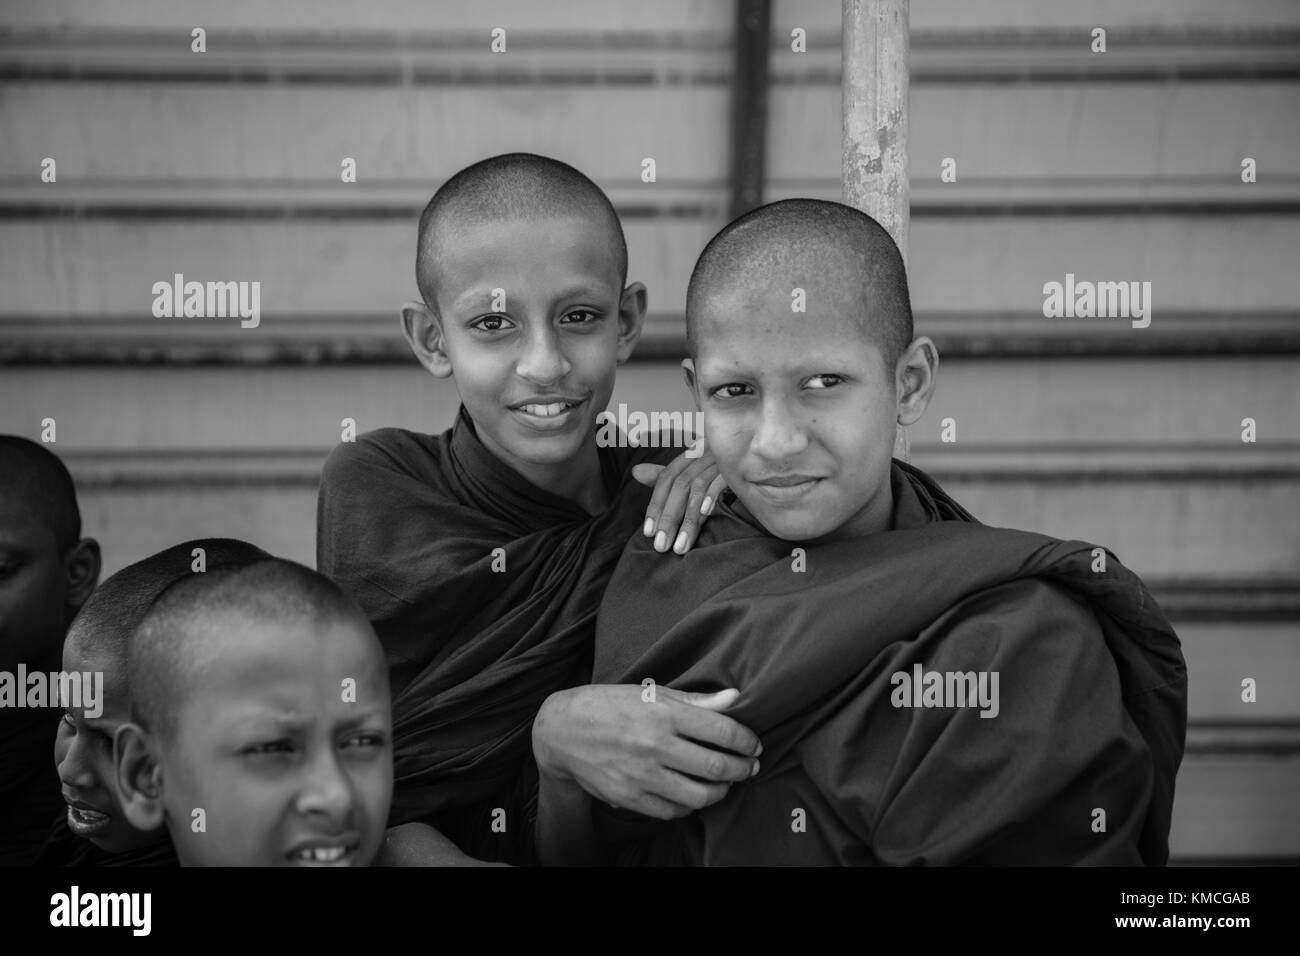 Les jeunes moines Bouddhistes sur le chemin de l'école au Sri Lanka Banque D'Images